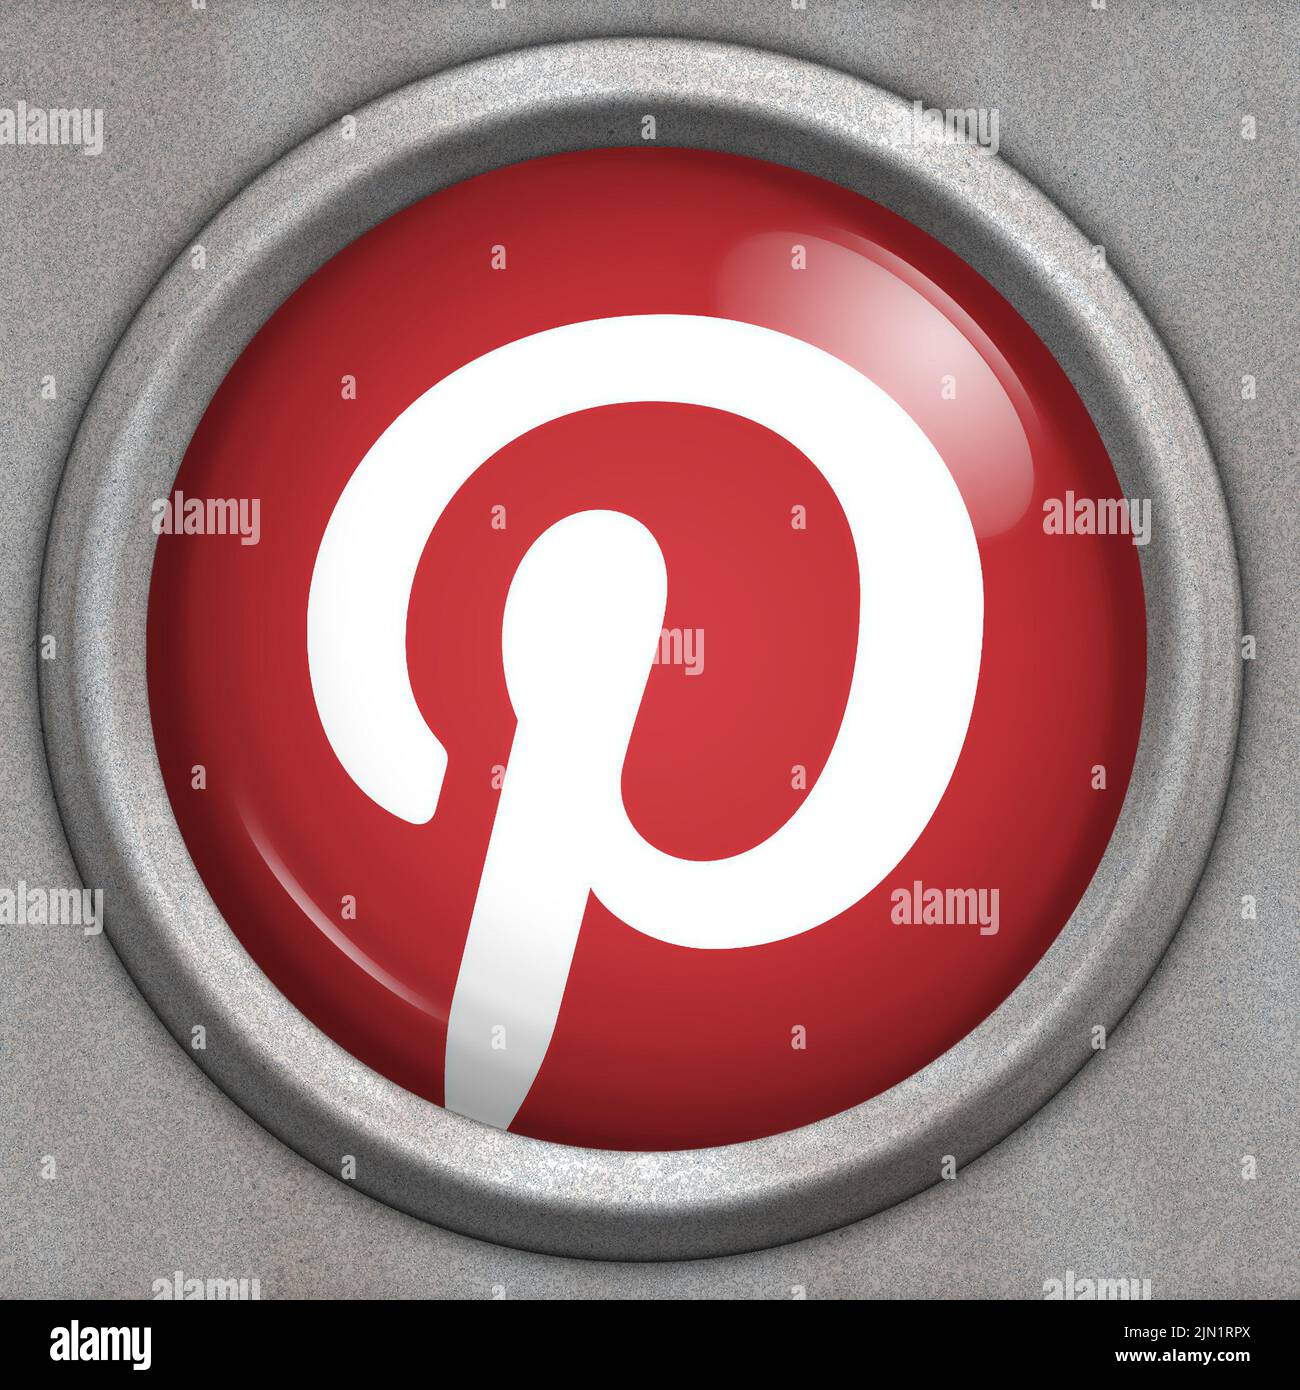 Botón con logotipo del servicio de redes sociales Pinterest Foto de stock